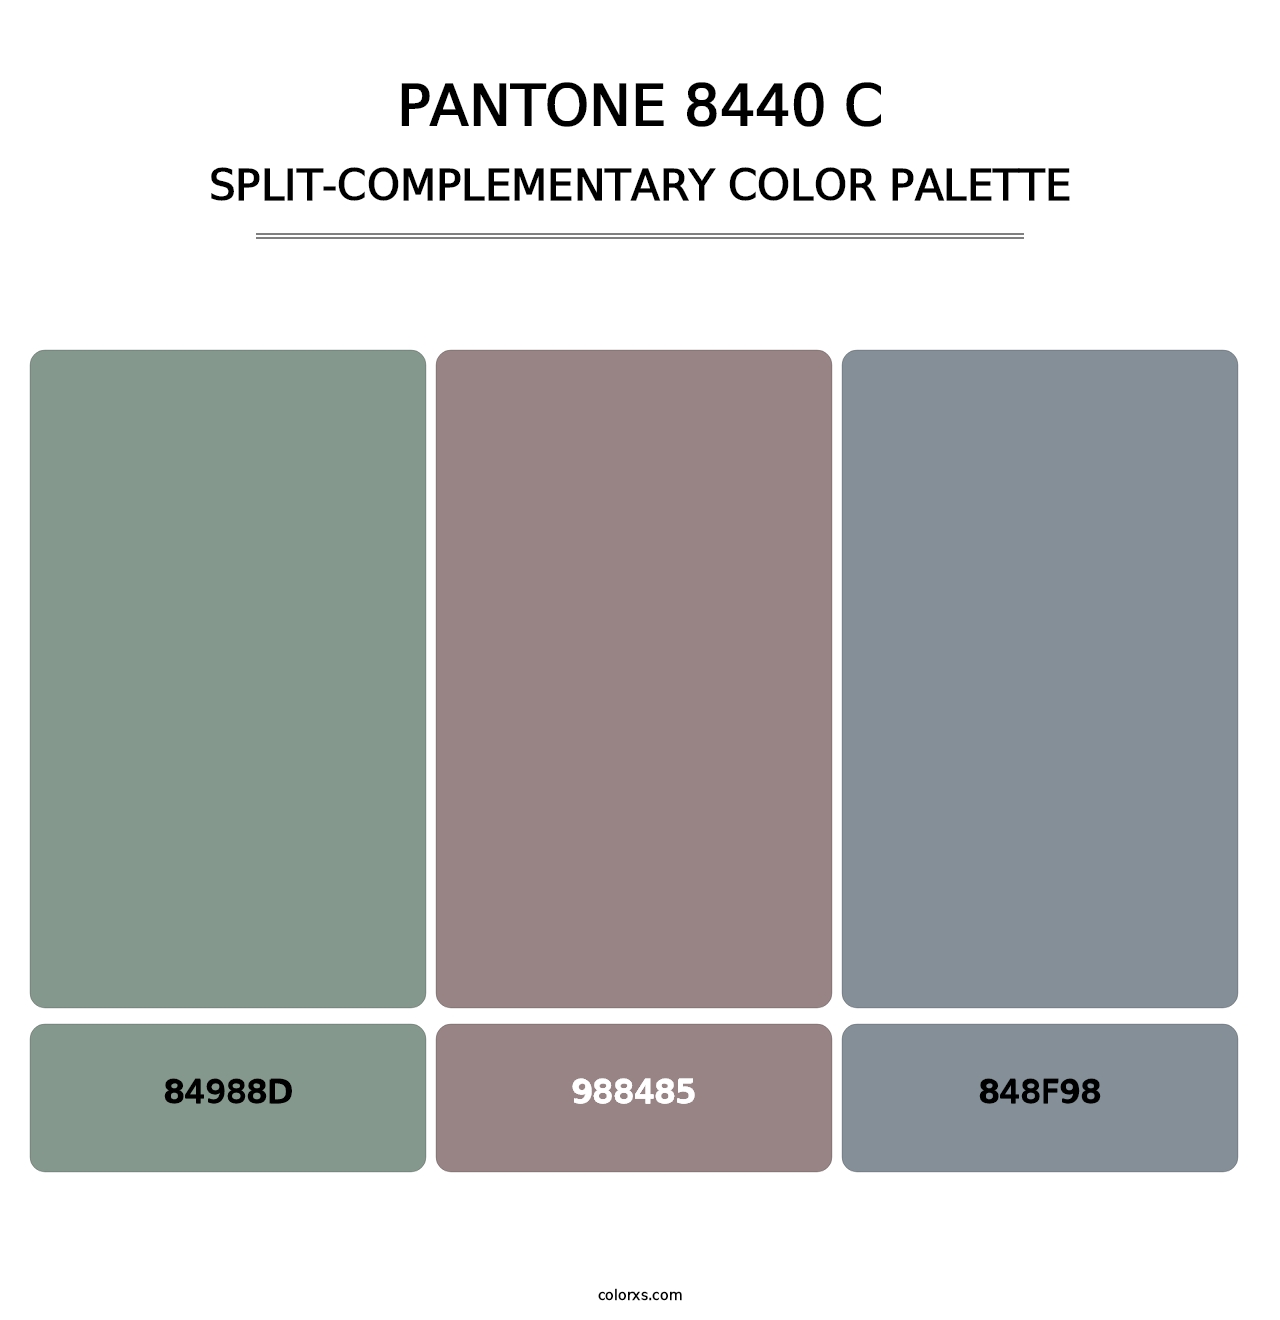 PANTONE 8440 C - Split-Complementary Color Palette